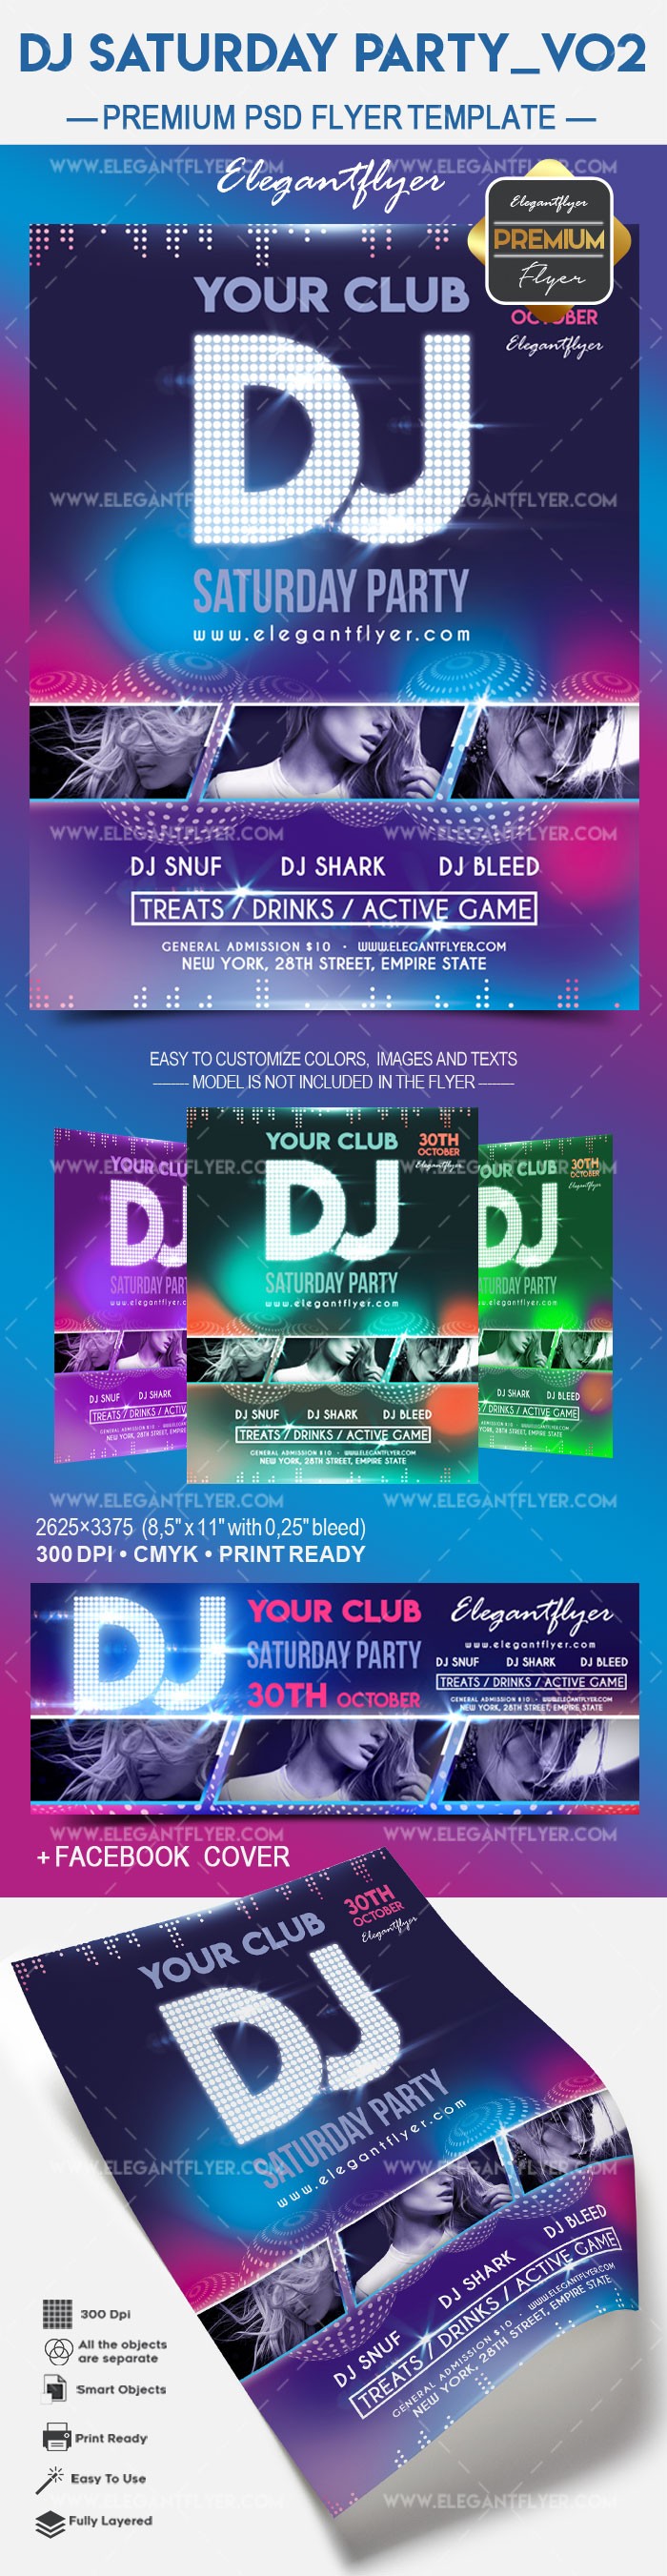 DJ Saturday party v02 by ElegantFlyer